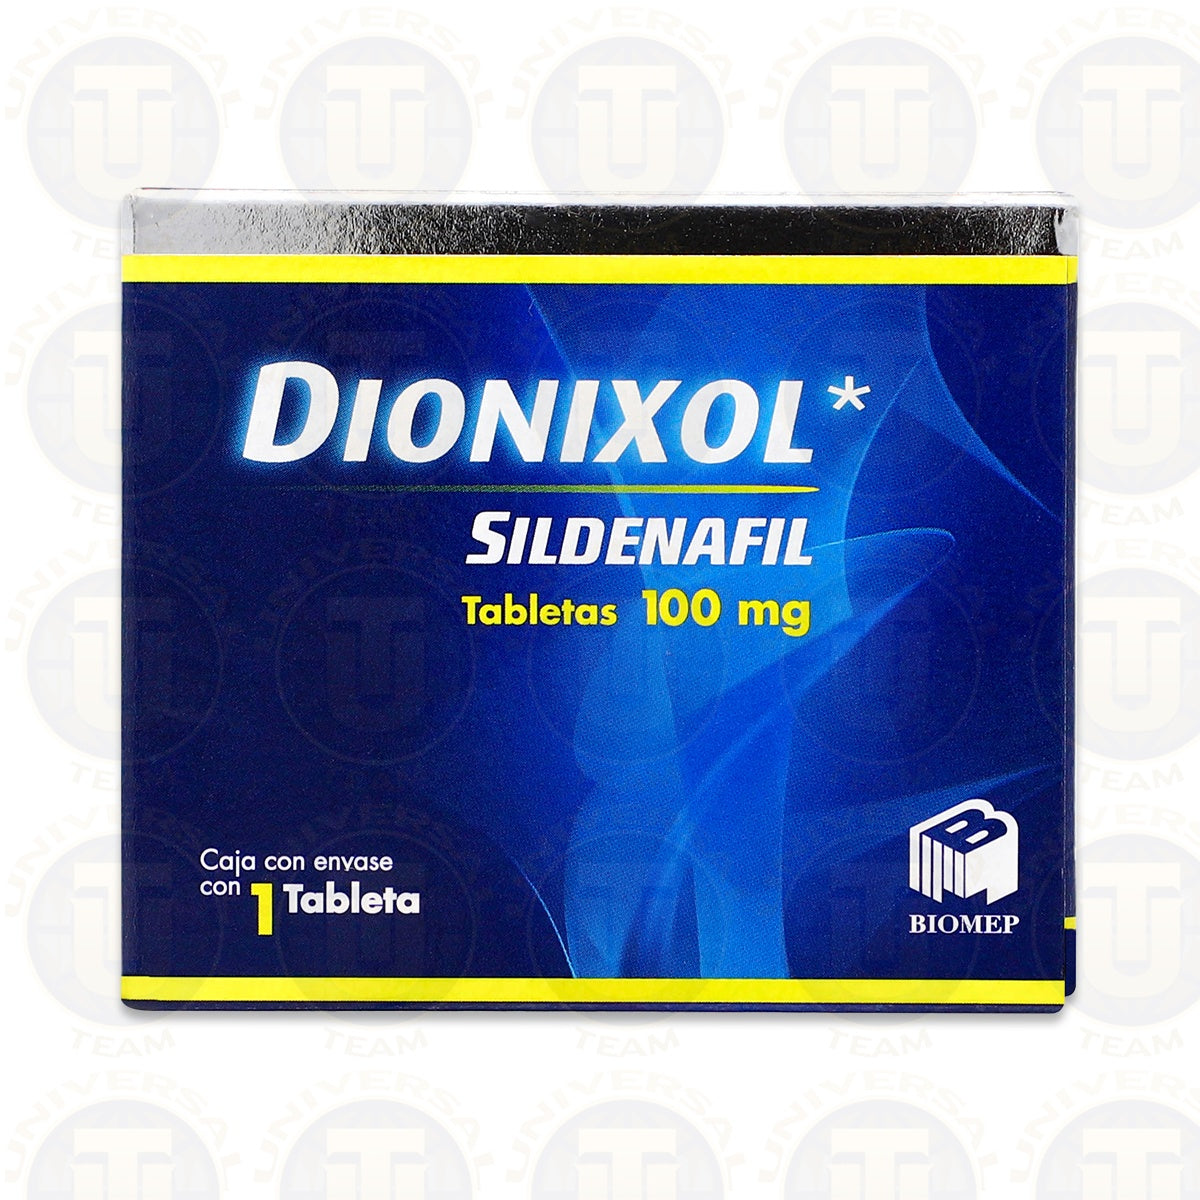 SILDENAFIL DIONIXOL, 1 TABLETA DE 100 MG, BIOMEP